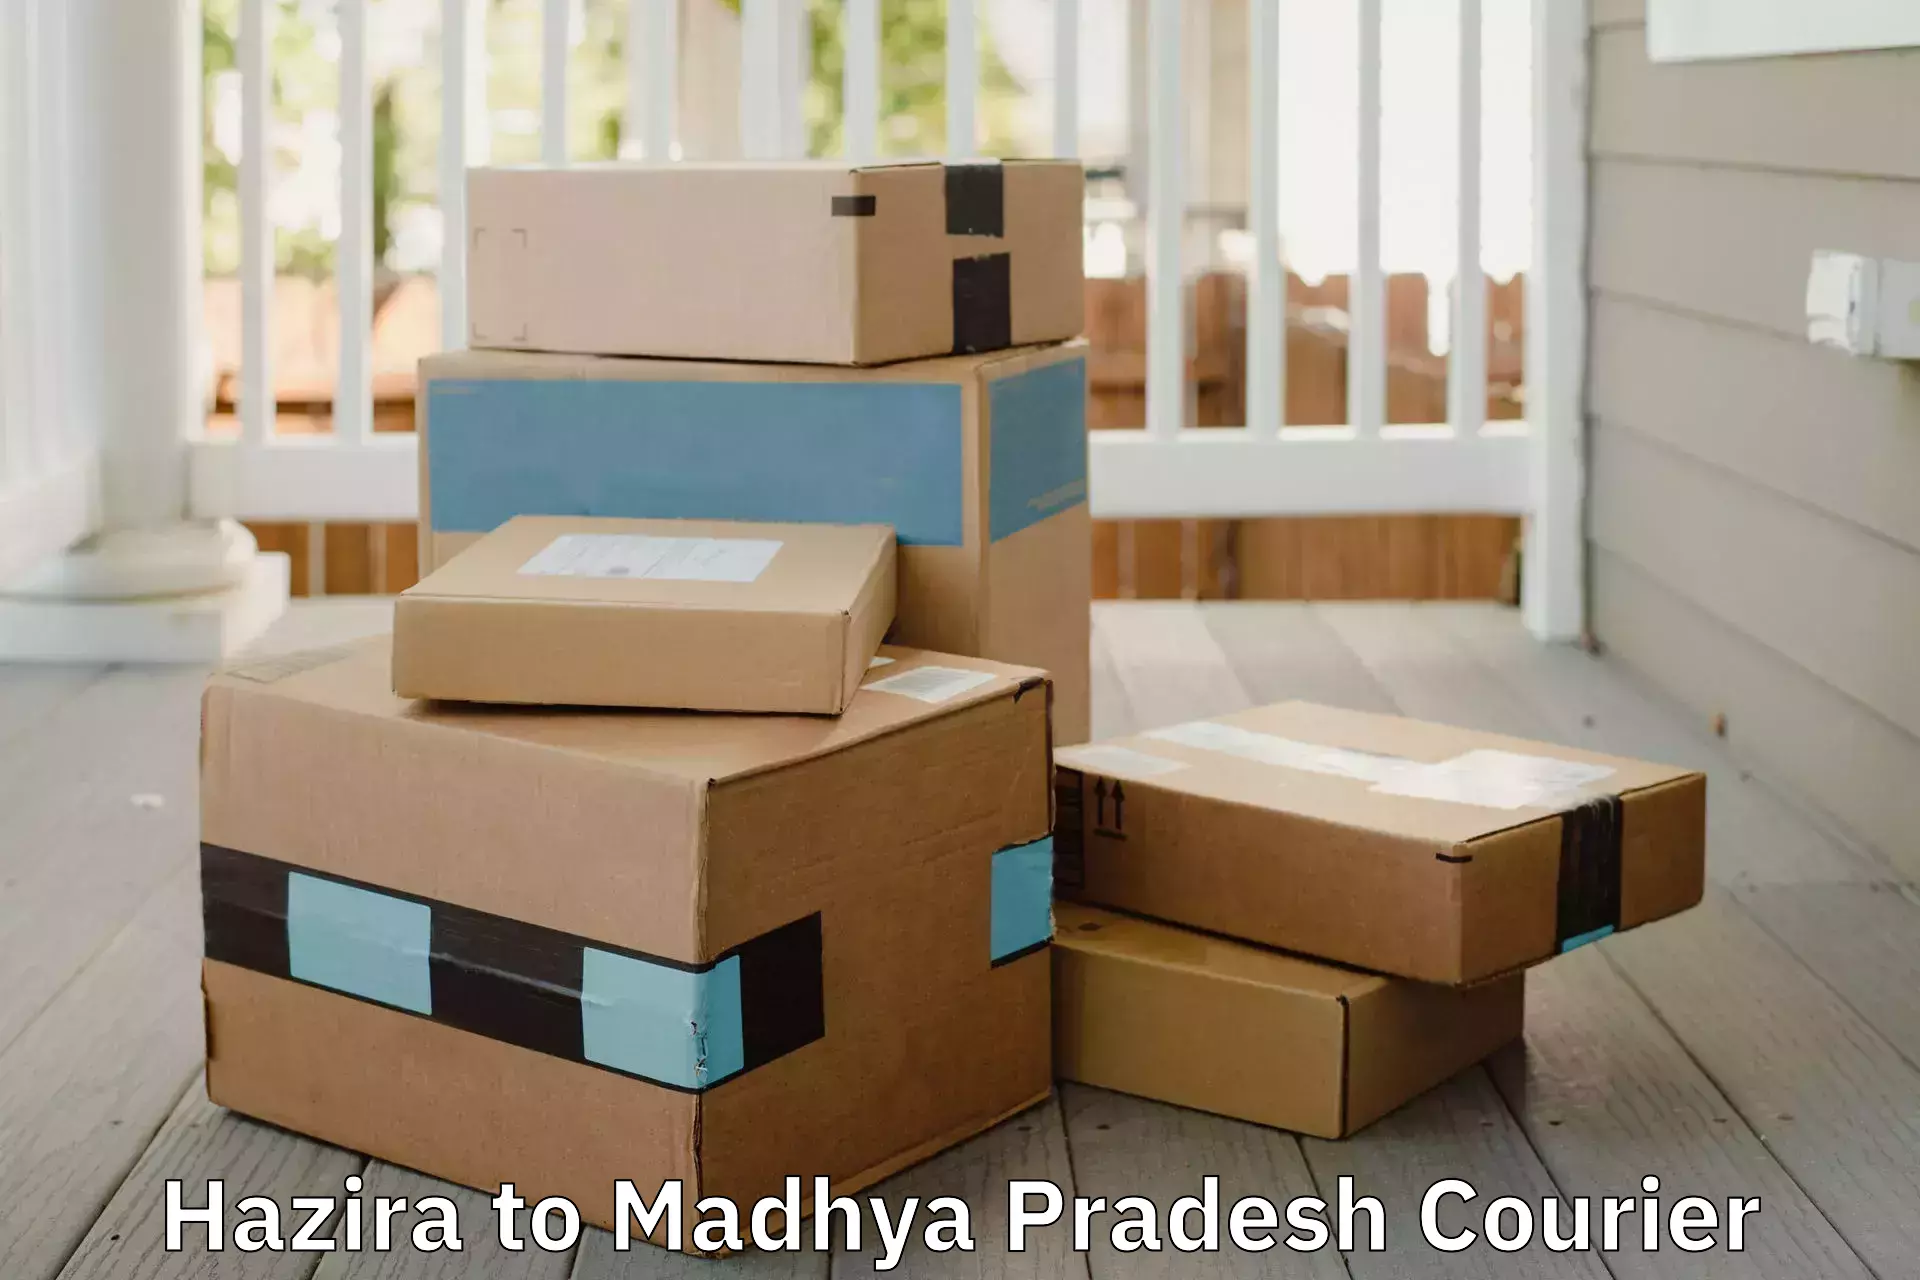 Furniture transport professionals Hazira to Madhya Pradesh